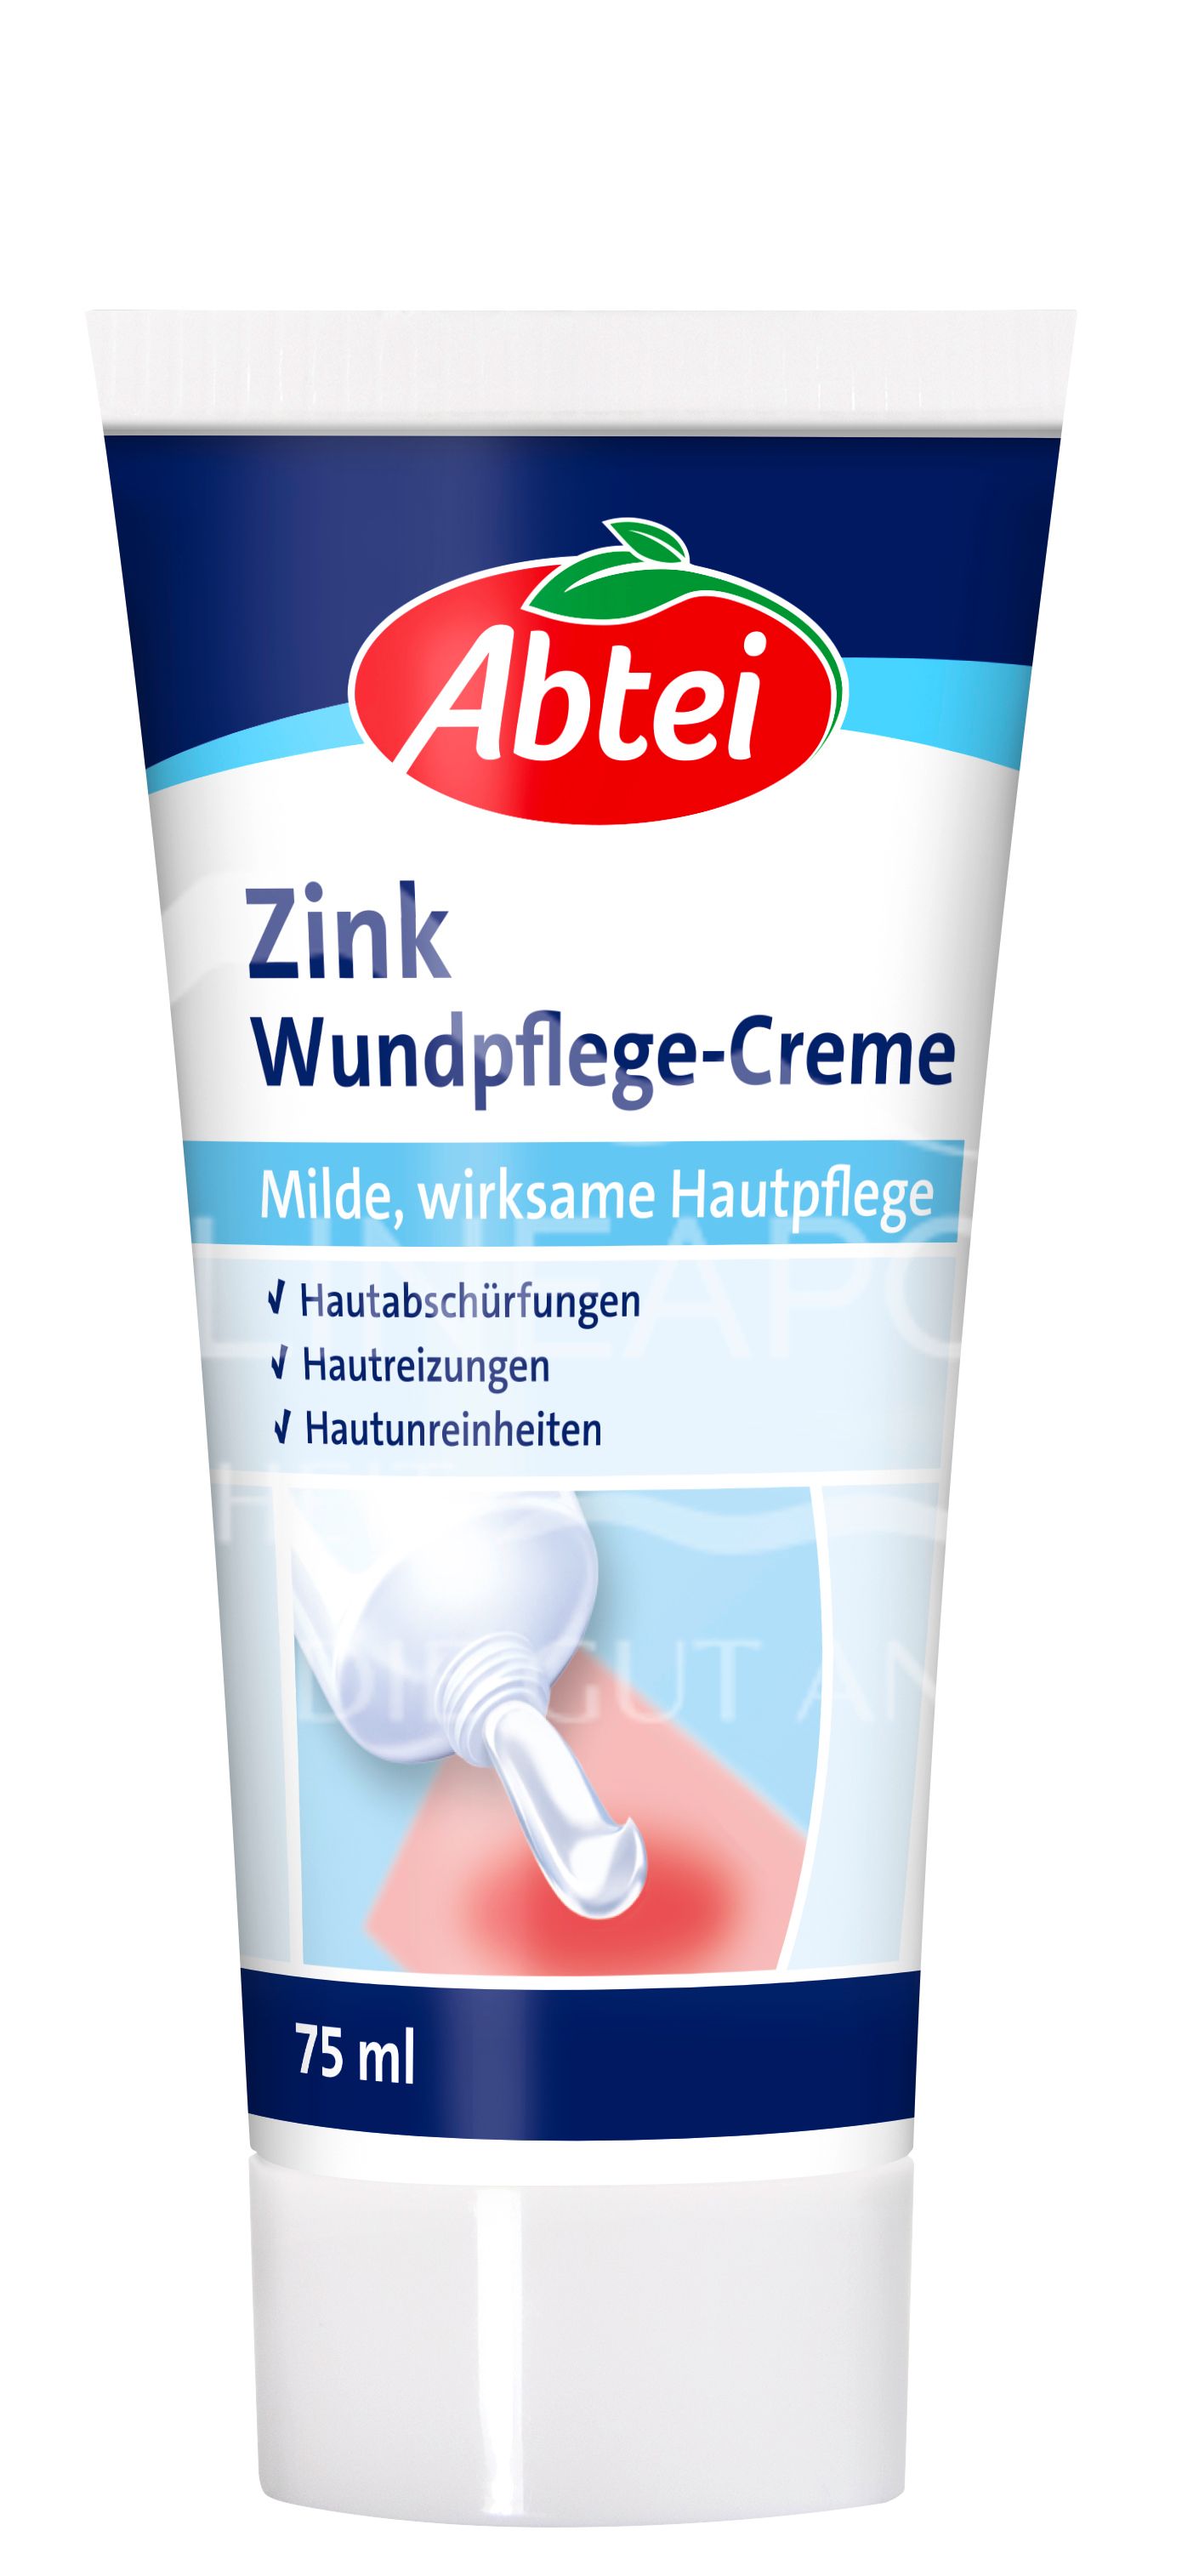 Abtei Zink Wundpflege-Creme